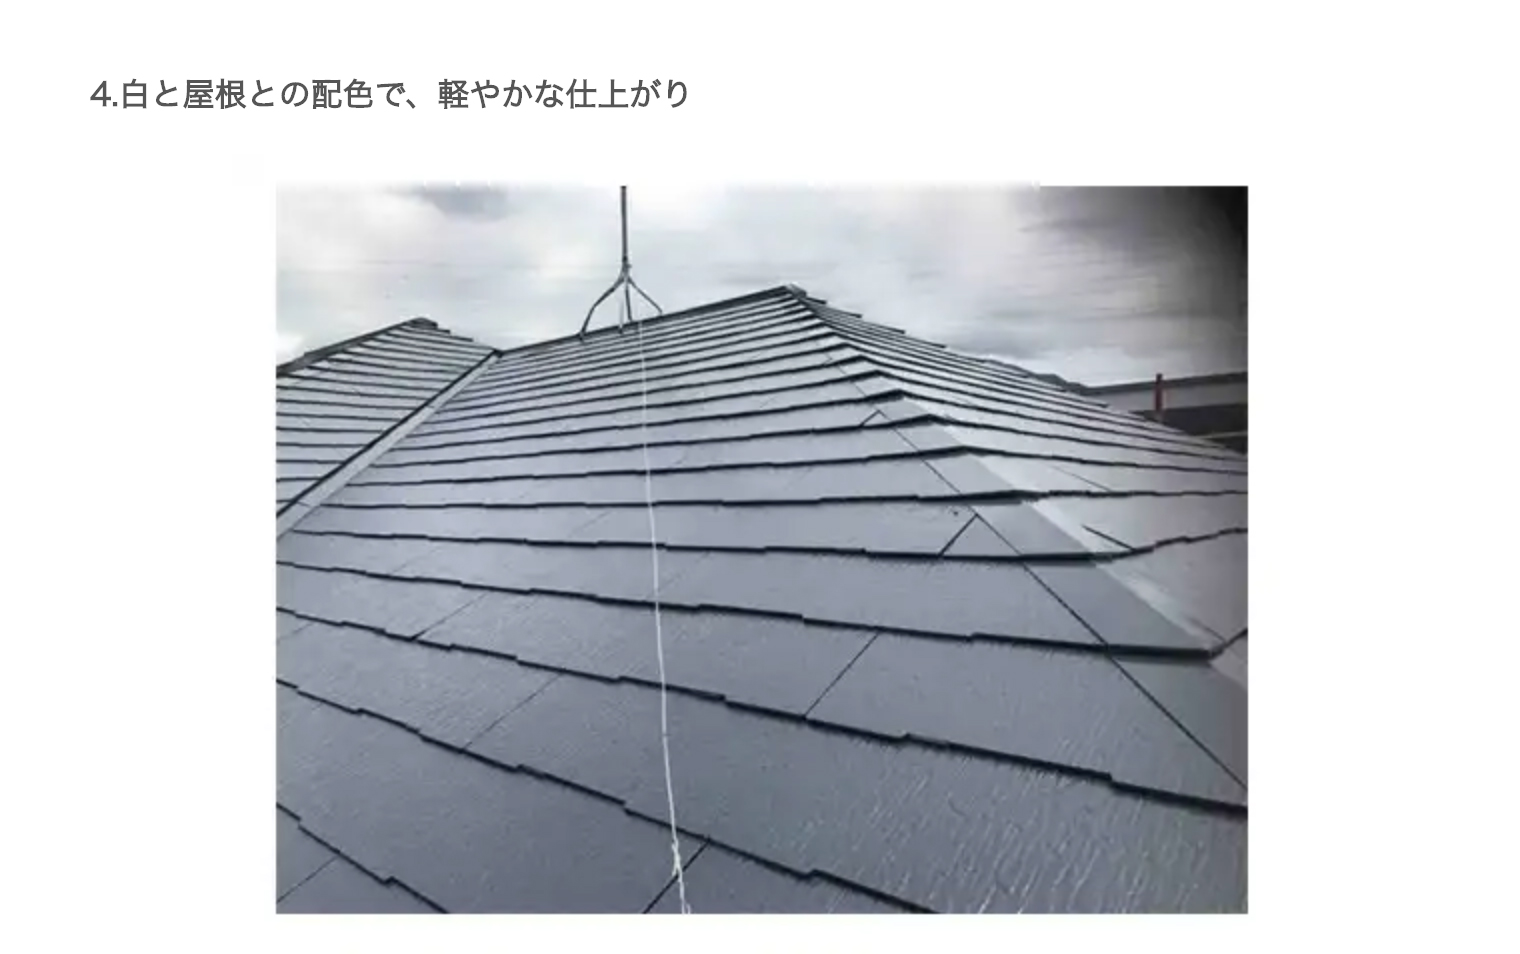 屋根色ならグレーが正解 専門家が推す3つの理由 配色のポイント ユーコーコミュニティー 神奈川 東京の外壁塗装と屋根リフォーム